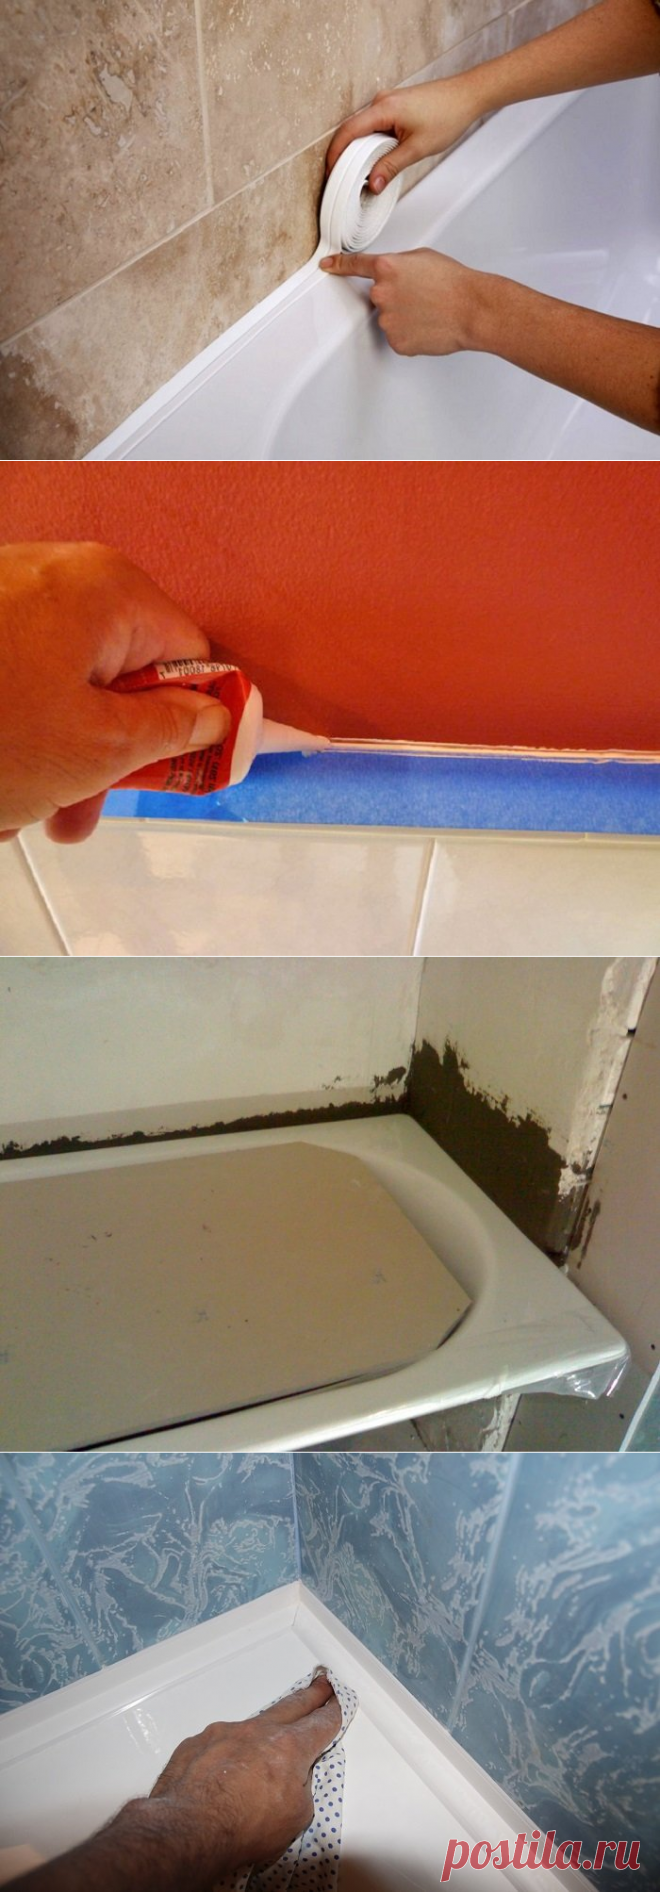 Как сделать между ванной и стеной. Галтель для ванны заделать щель 80 мм. Загерметизировать стык ванны и стены. Стык между ванной и стеной. Шов между ванной и стеной.